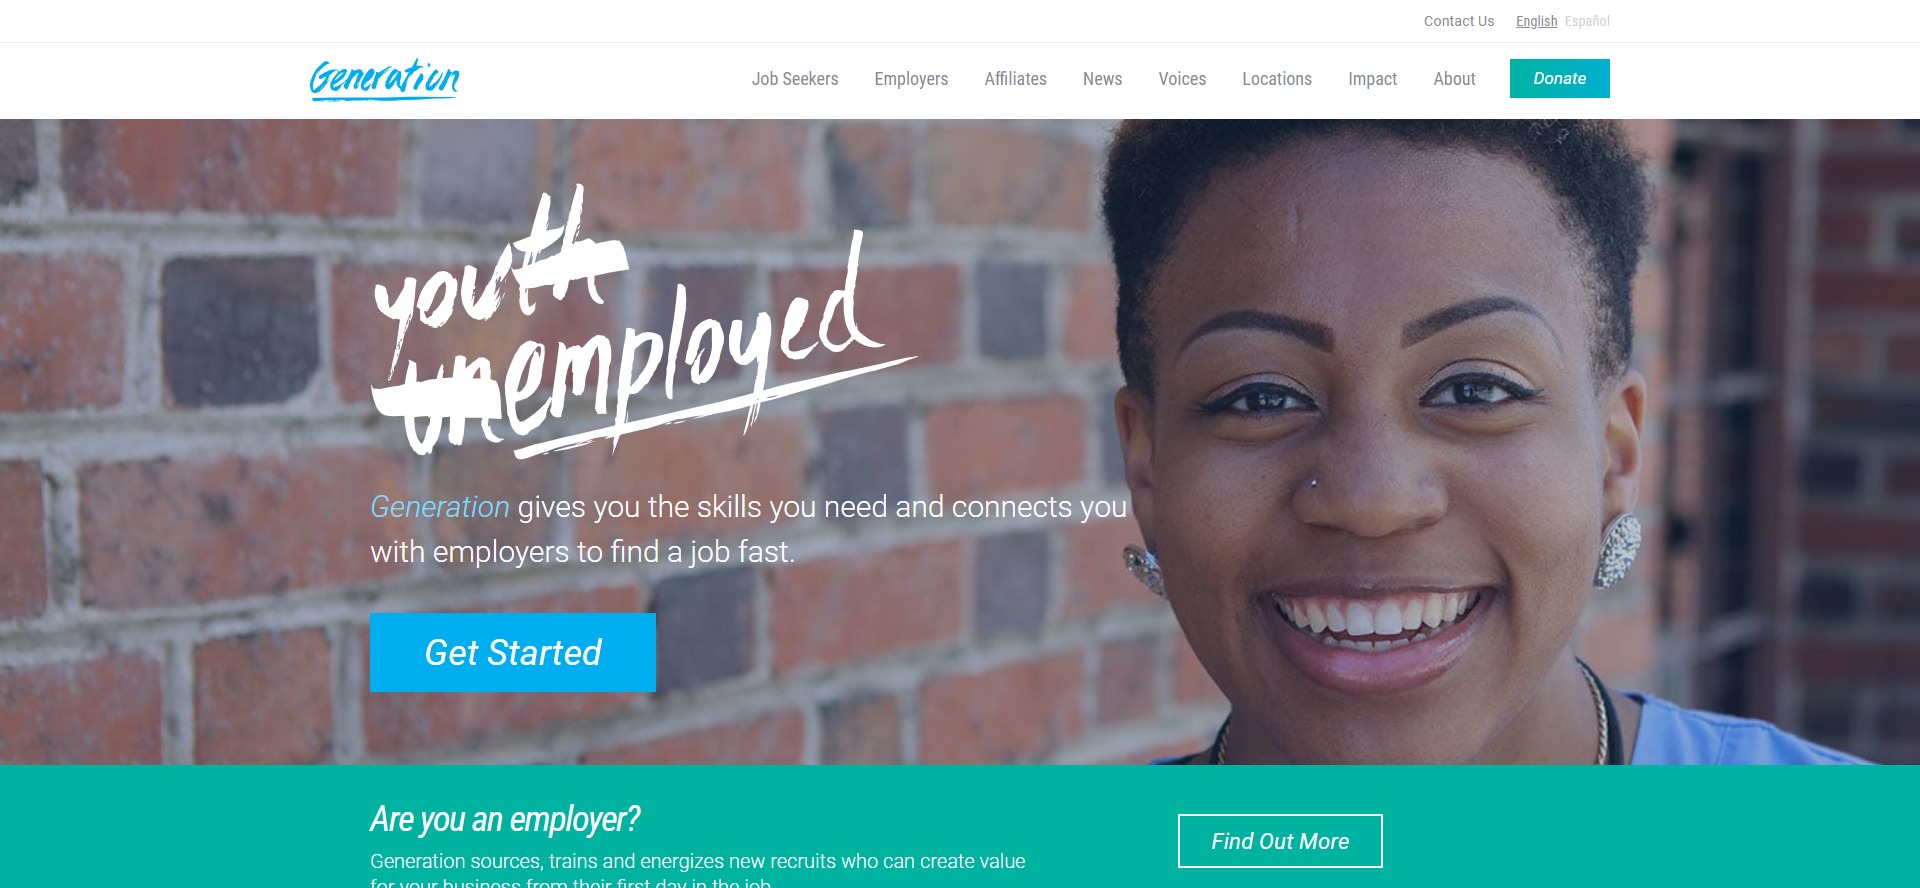 McKinsey et Google : une alliance pour une réponse digitale au chômage des jeunes